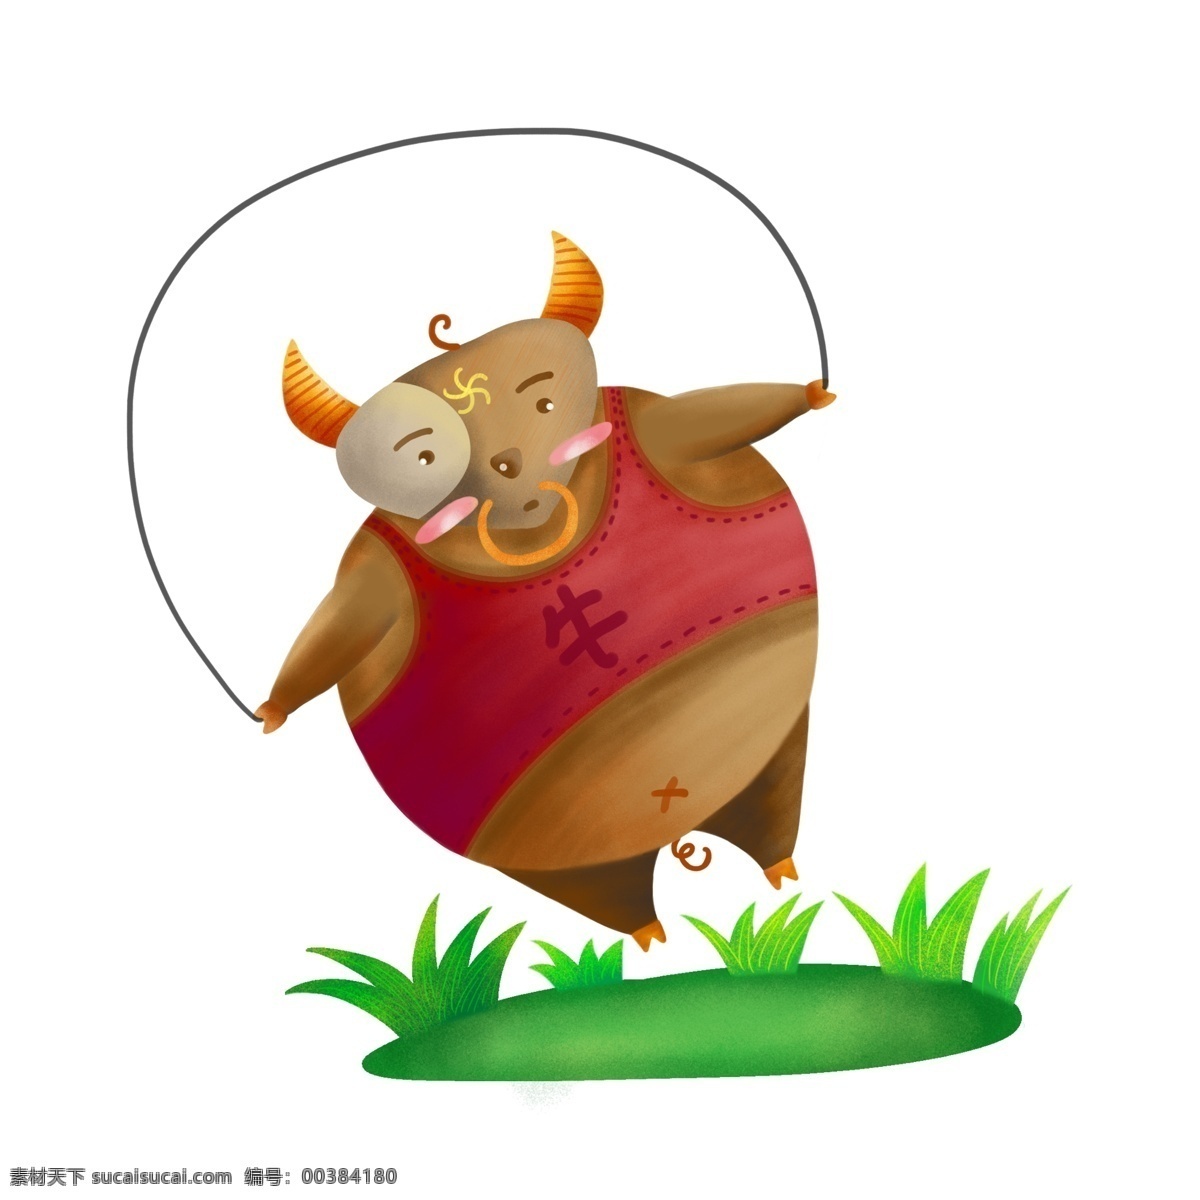 小胖 牛 可爱 胖 动物 原创 肌理 插画 元素 胖动物 小胖牛 卡通 肌理插画 设计元素 psd格式